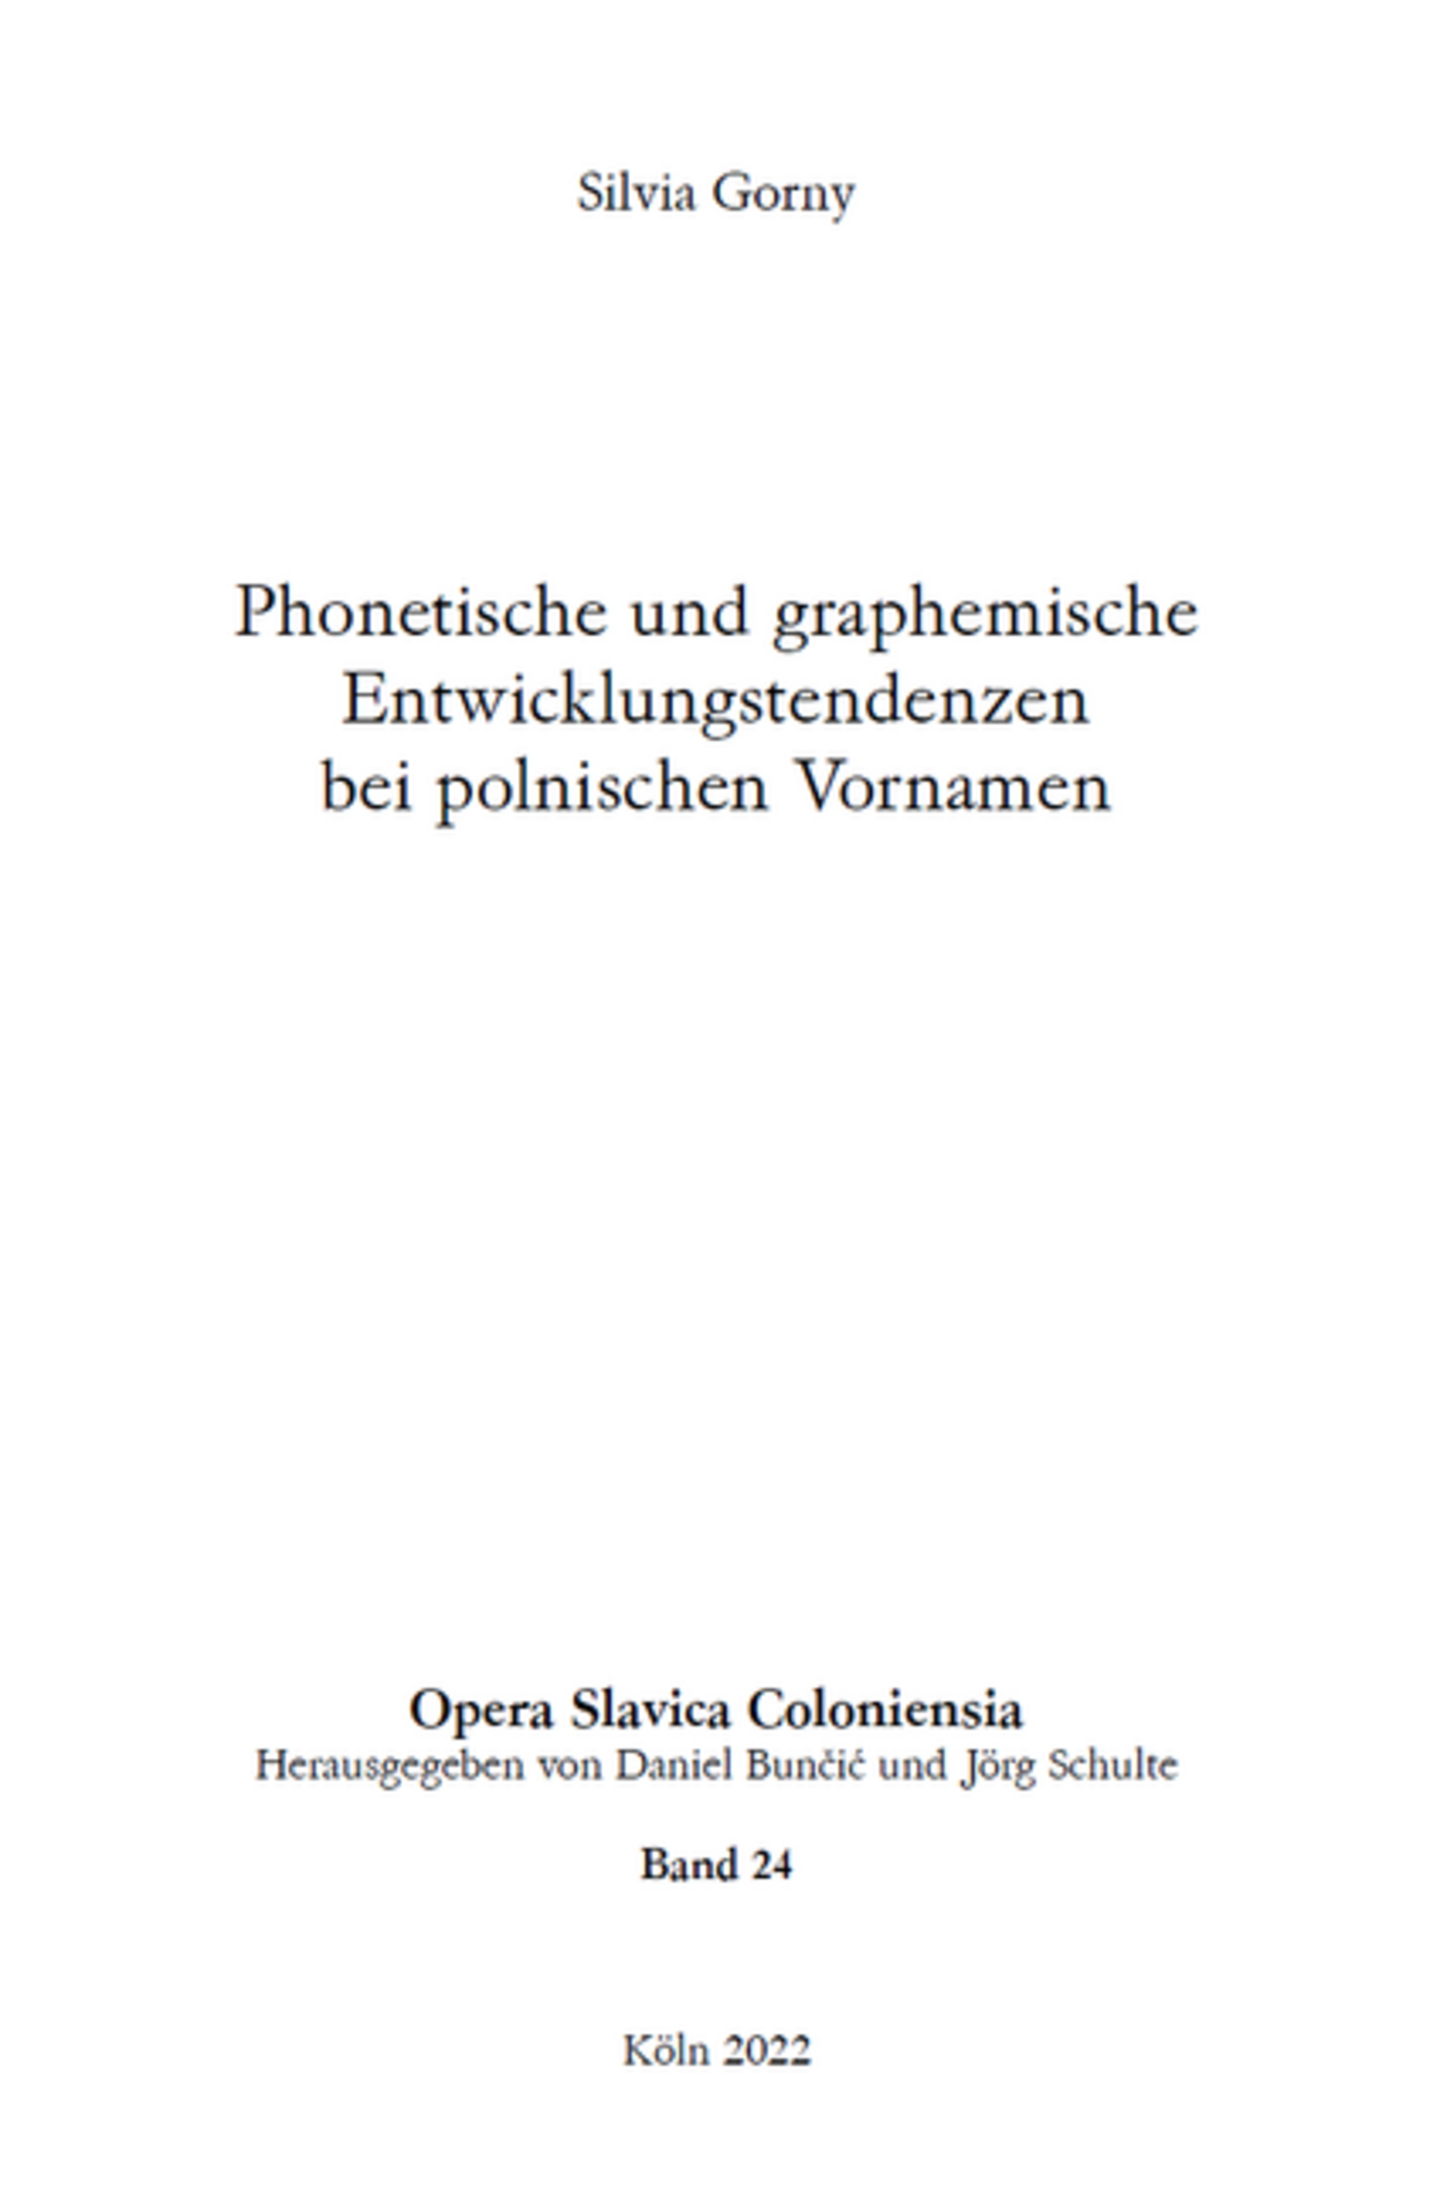 Opera Slavica Coloniensia, Bd. 24: Silvia Gorny (2022) Phonetische und graphemische Entwicklungstendenzen bei polnischen Vornamen